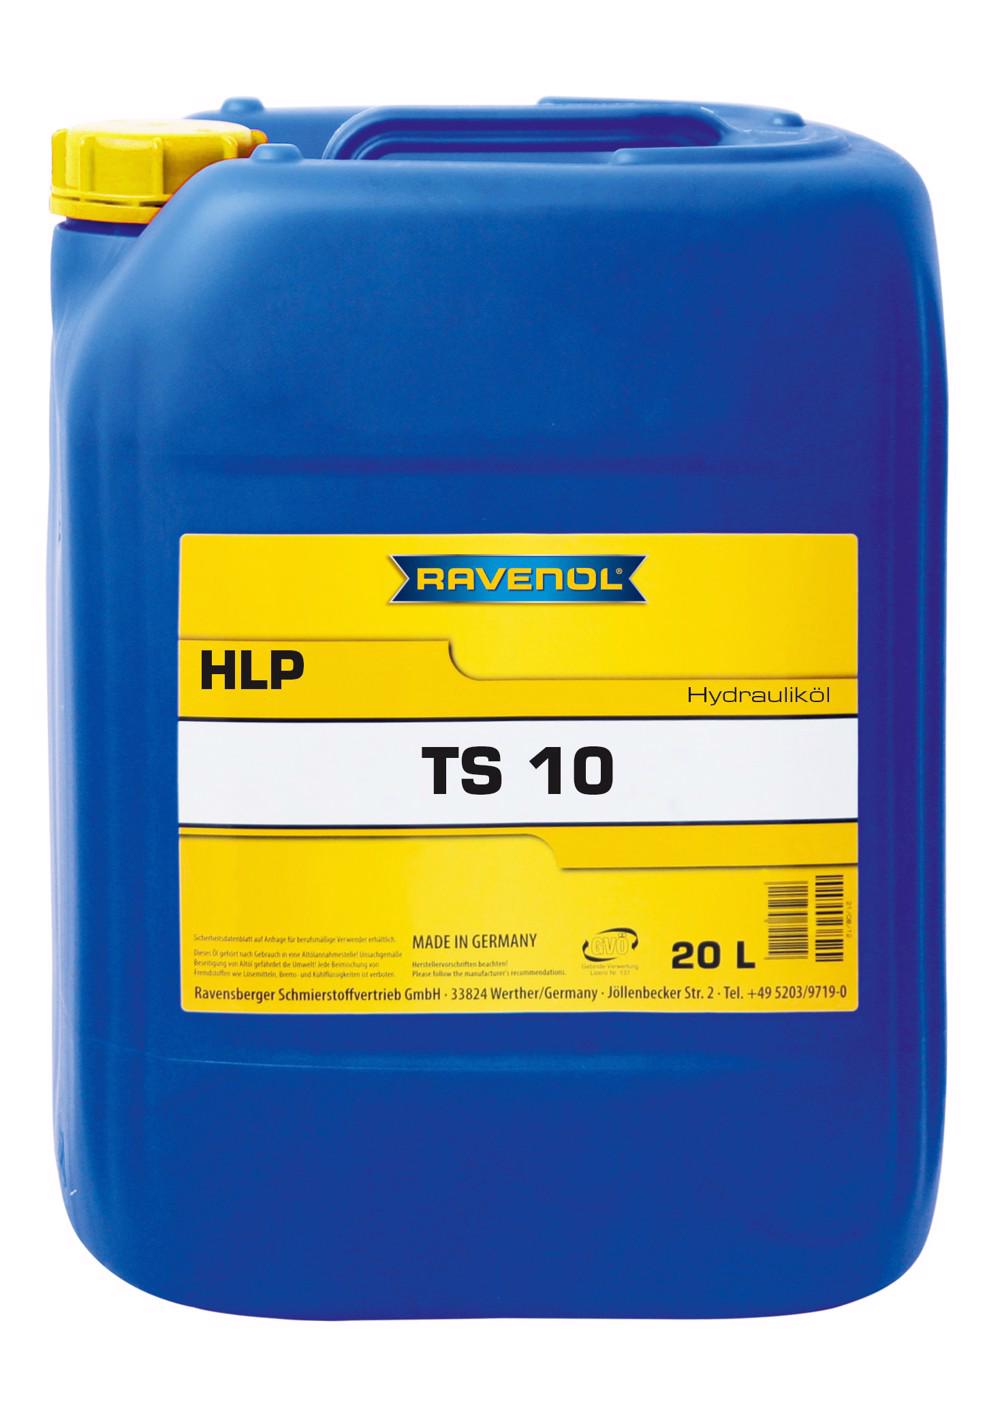 RAVENOL Hydraulikoel TS 10 (HLP)  20 L